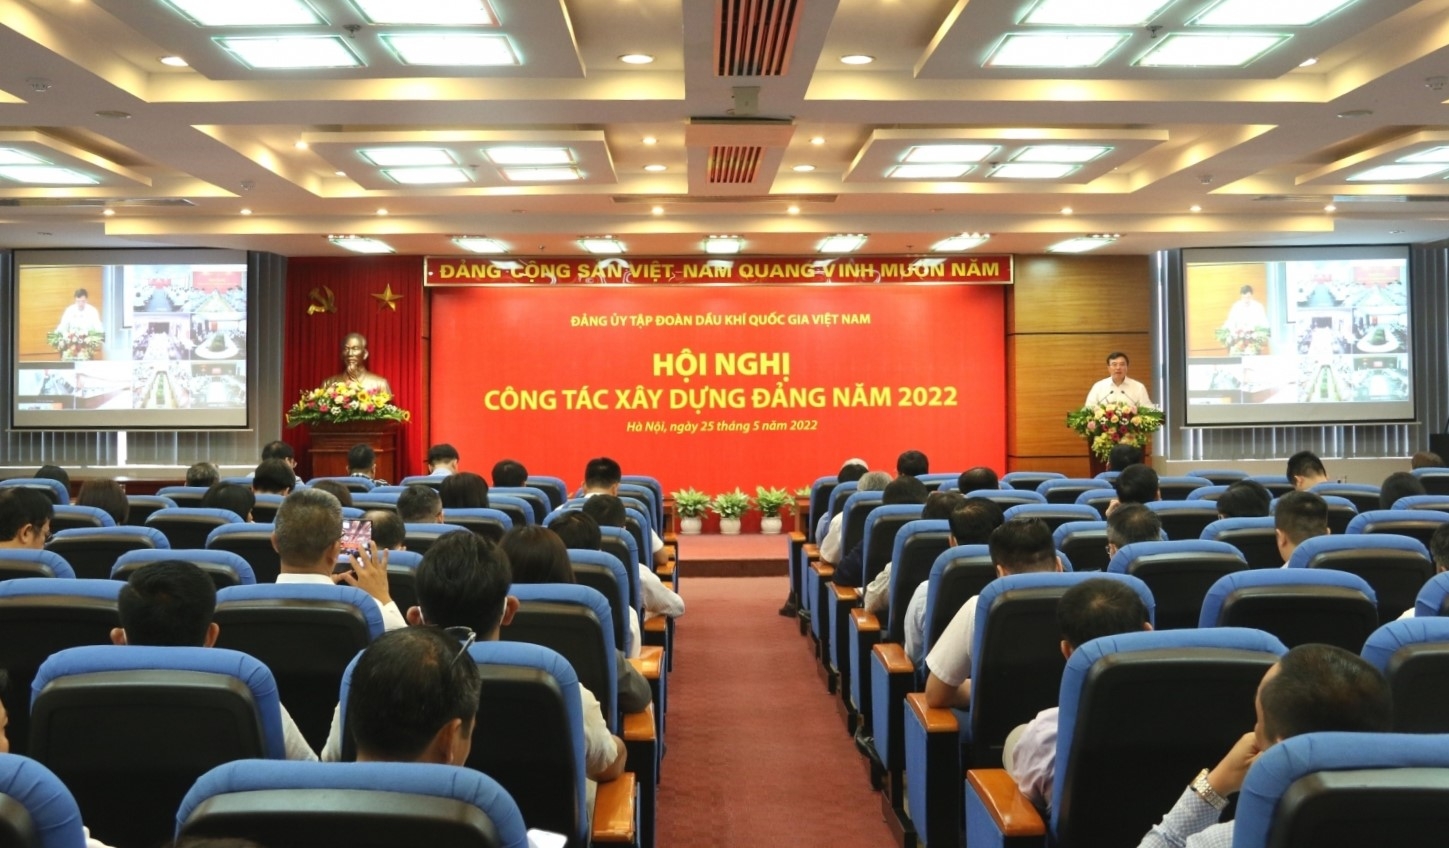 ảng ủy Tập đoàn Dầu khí Quốc gia Việt Nam (Đảng ủy Tập đoàn) tổ chức Hội nghị công tác xây dựng Đảng năm 2022